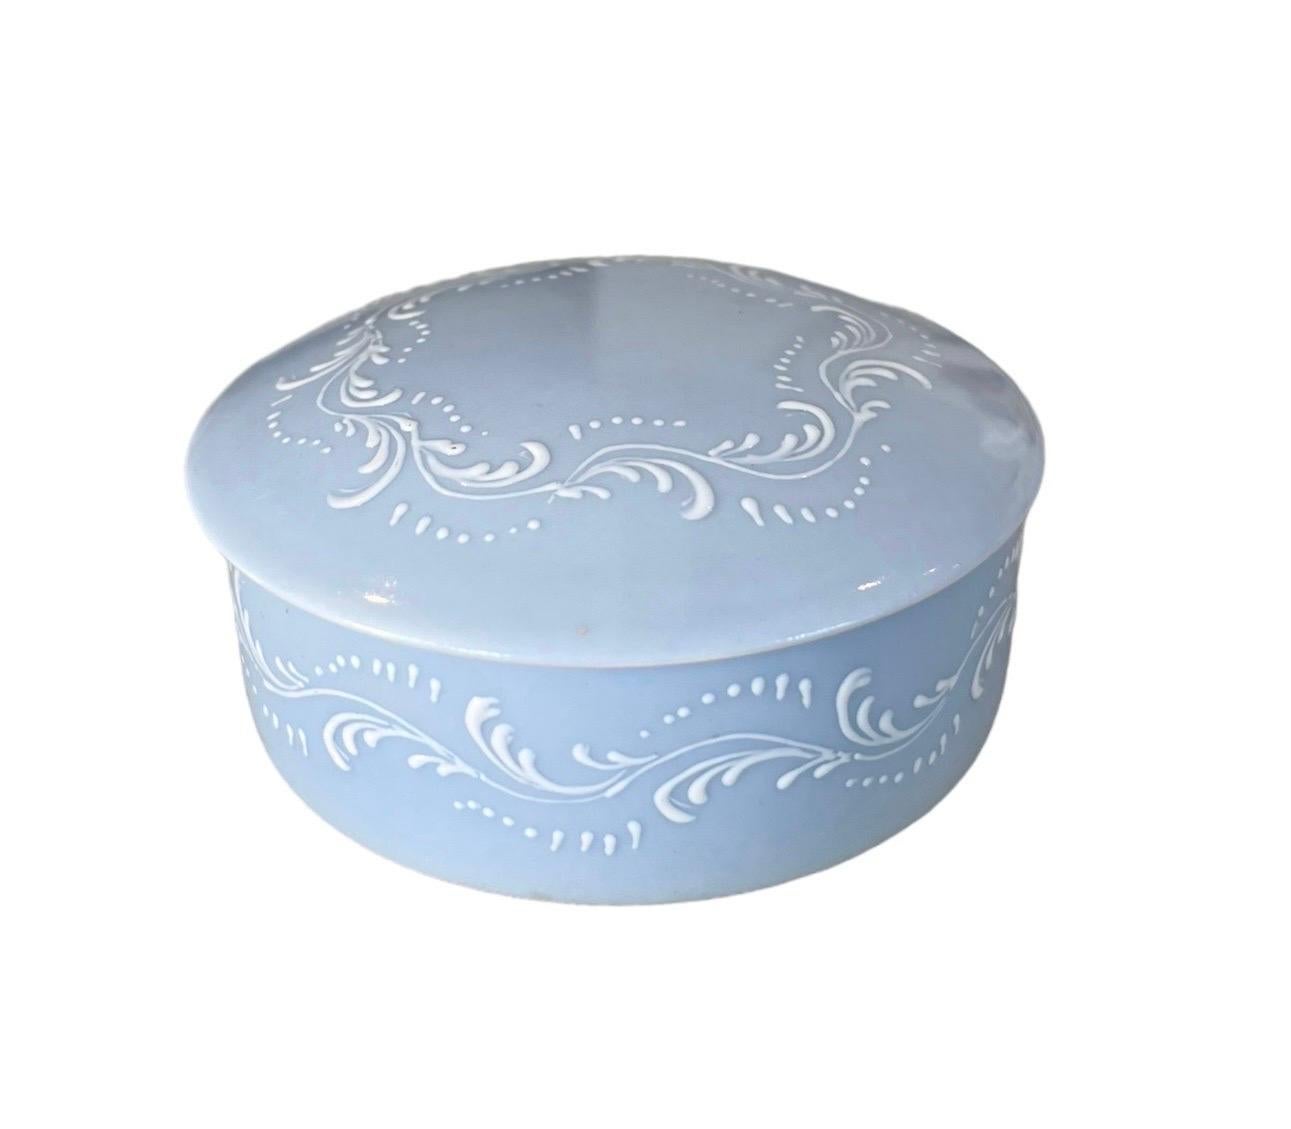 Très jolie petite boîte, bonbonnière en porcelaine de Limoges, création de la Maison Baud Paris.
La couleur bleue est très délicate, dans un ton pastel, et les motifs de feuillage blanc gaufrés et peints à la main sont très délicats.
L'ensemble est